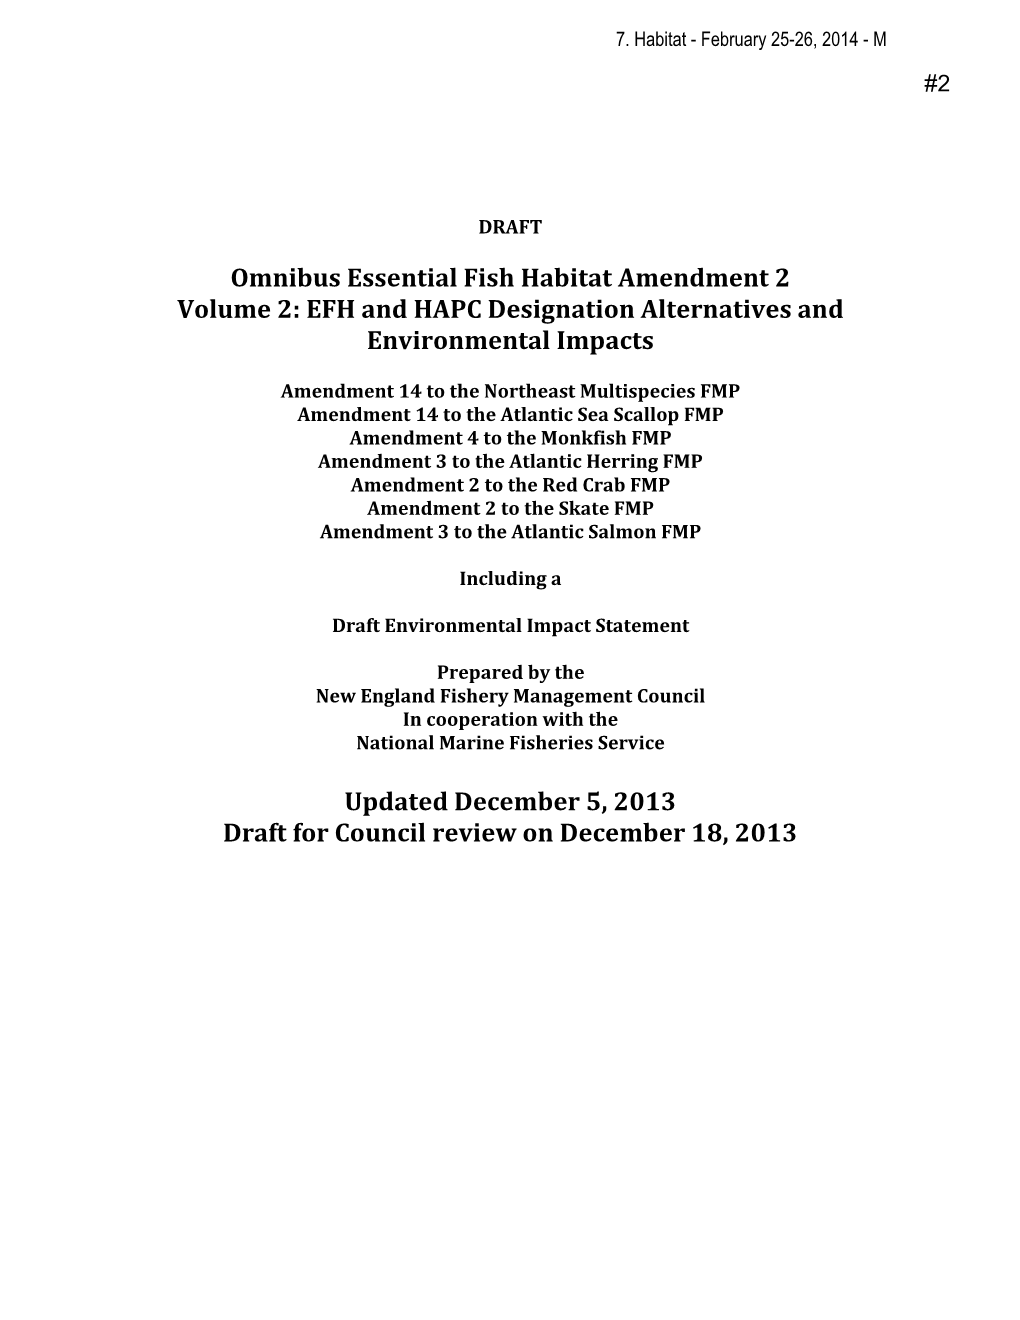 Omnibus Essential Fish Habitat Amendment 2 Volume 2: EFH and HAPC Designation Alternatives and Environmental Impacts